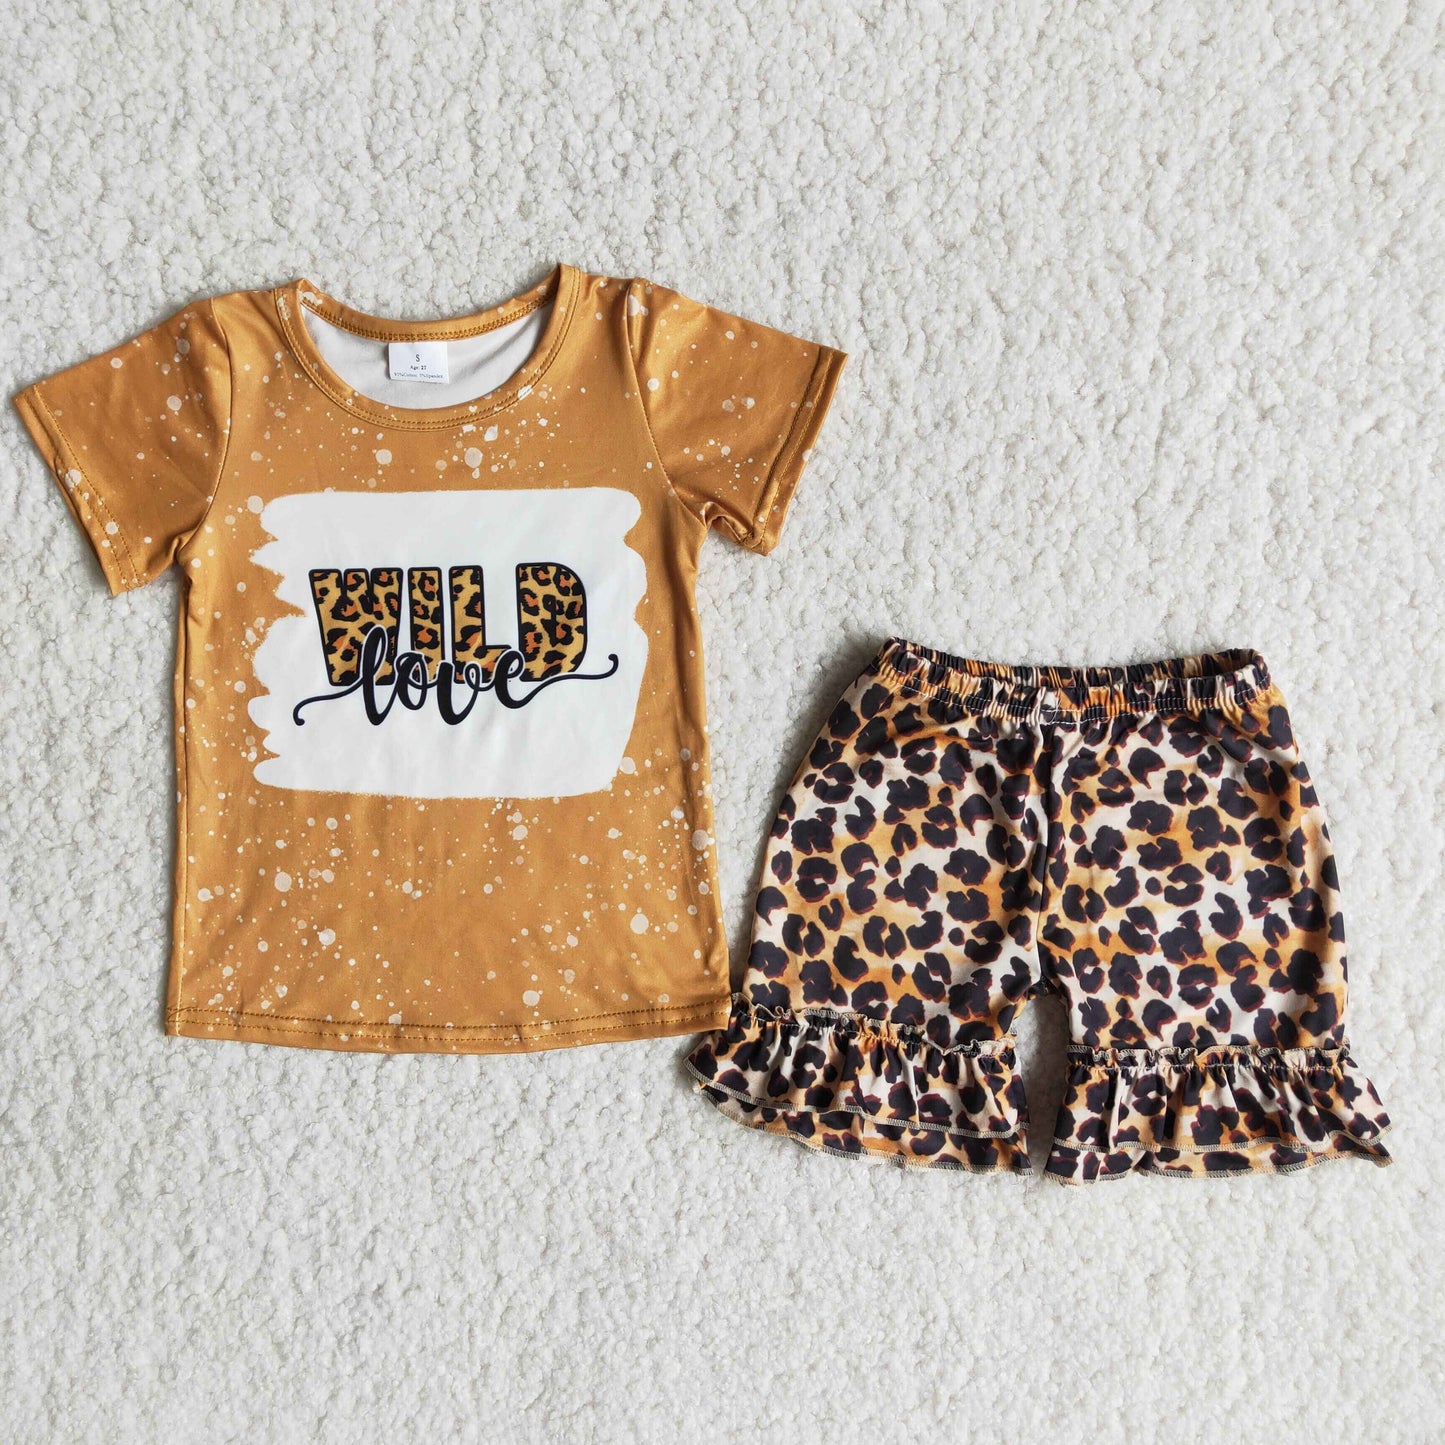 Wild shirt leopard girls summer clothing